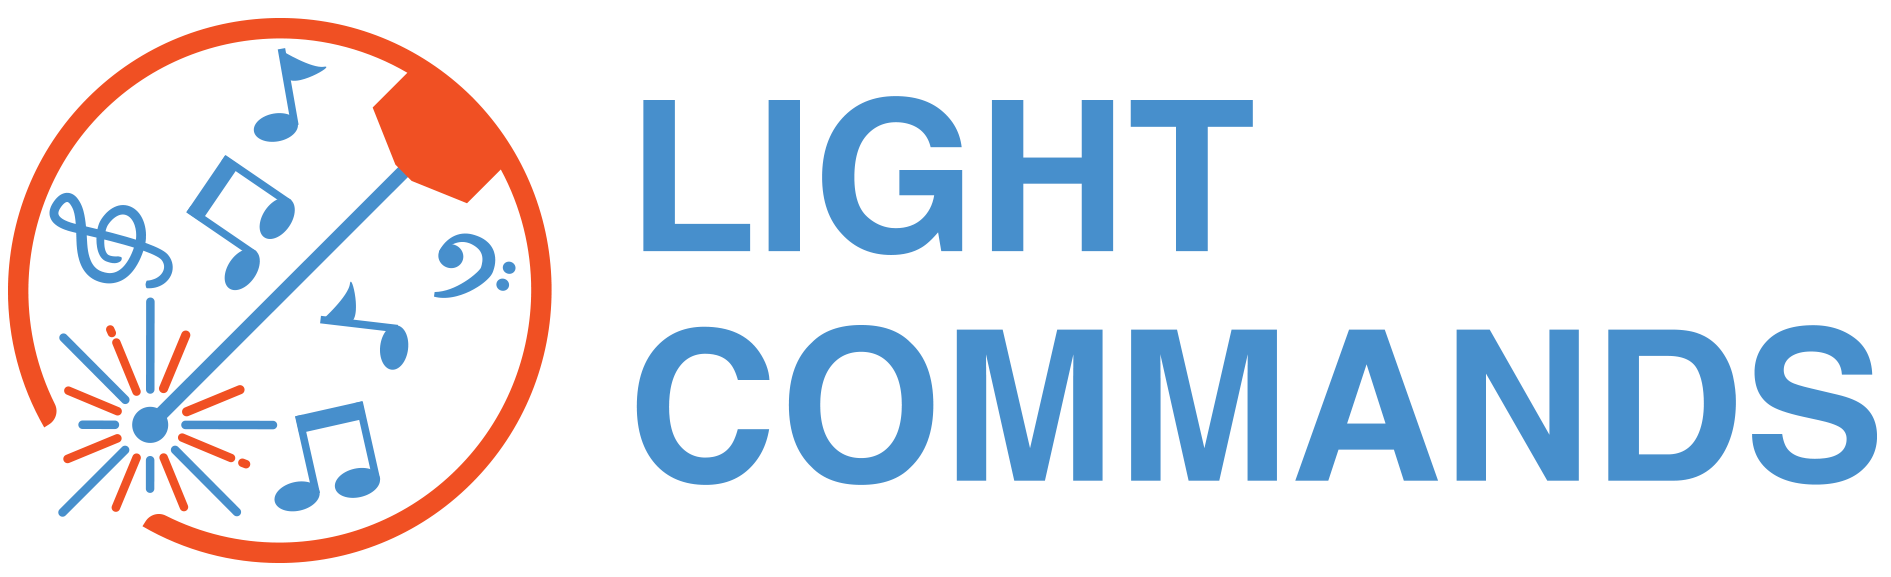 Light commands